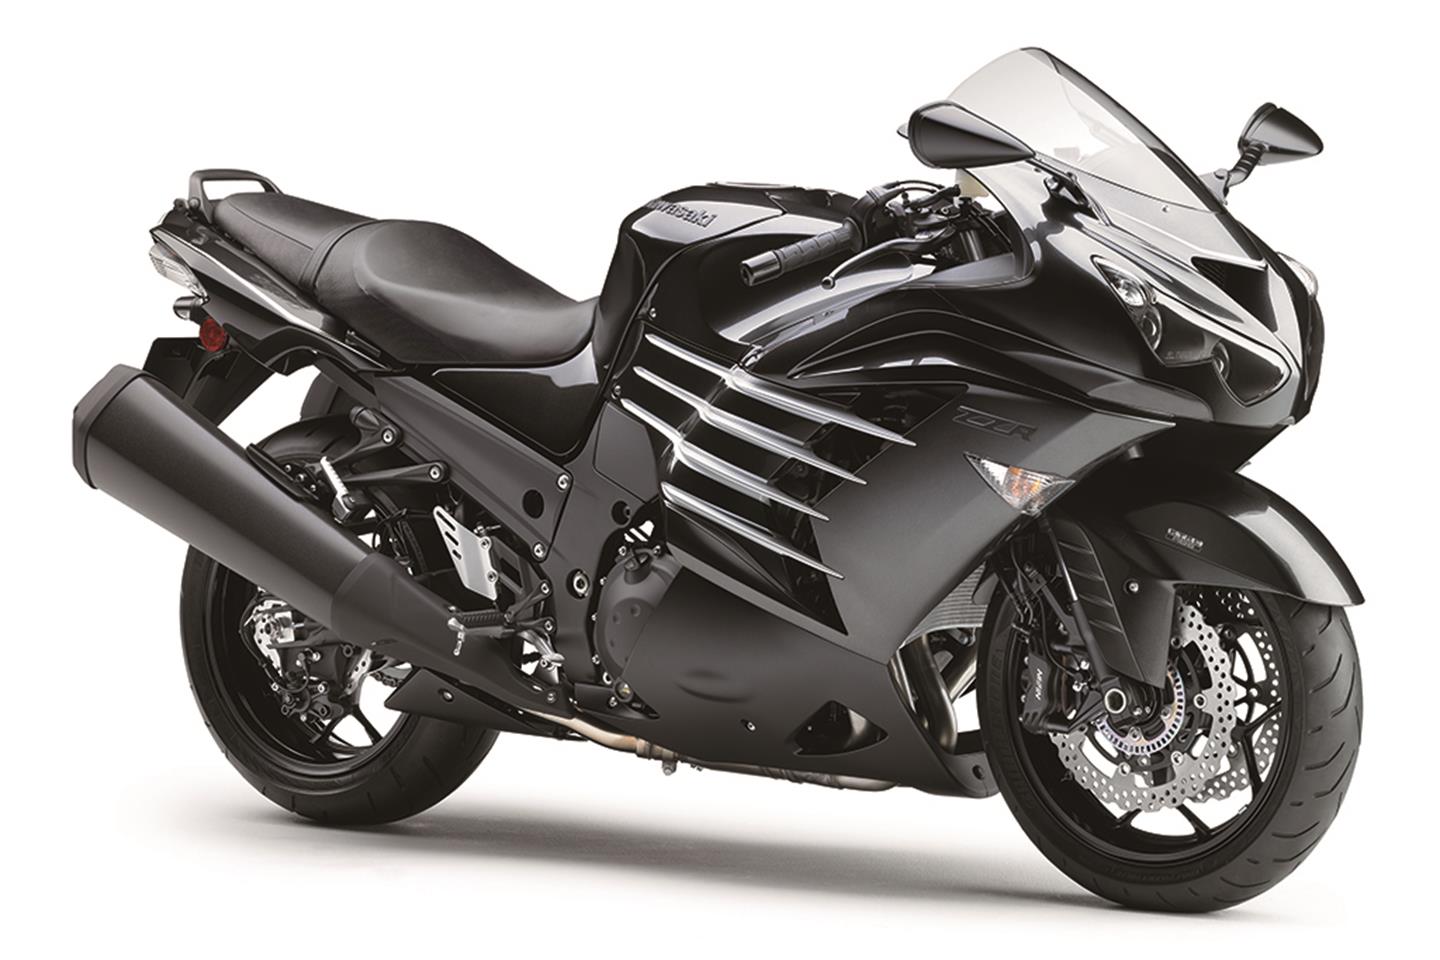 Kawasaki announce 2016 prices